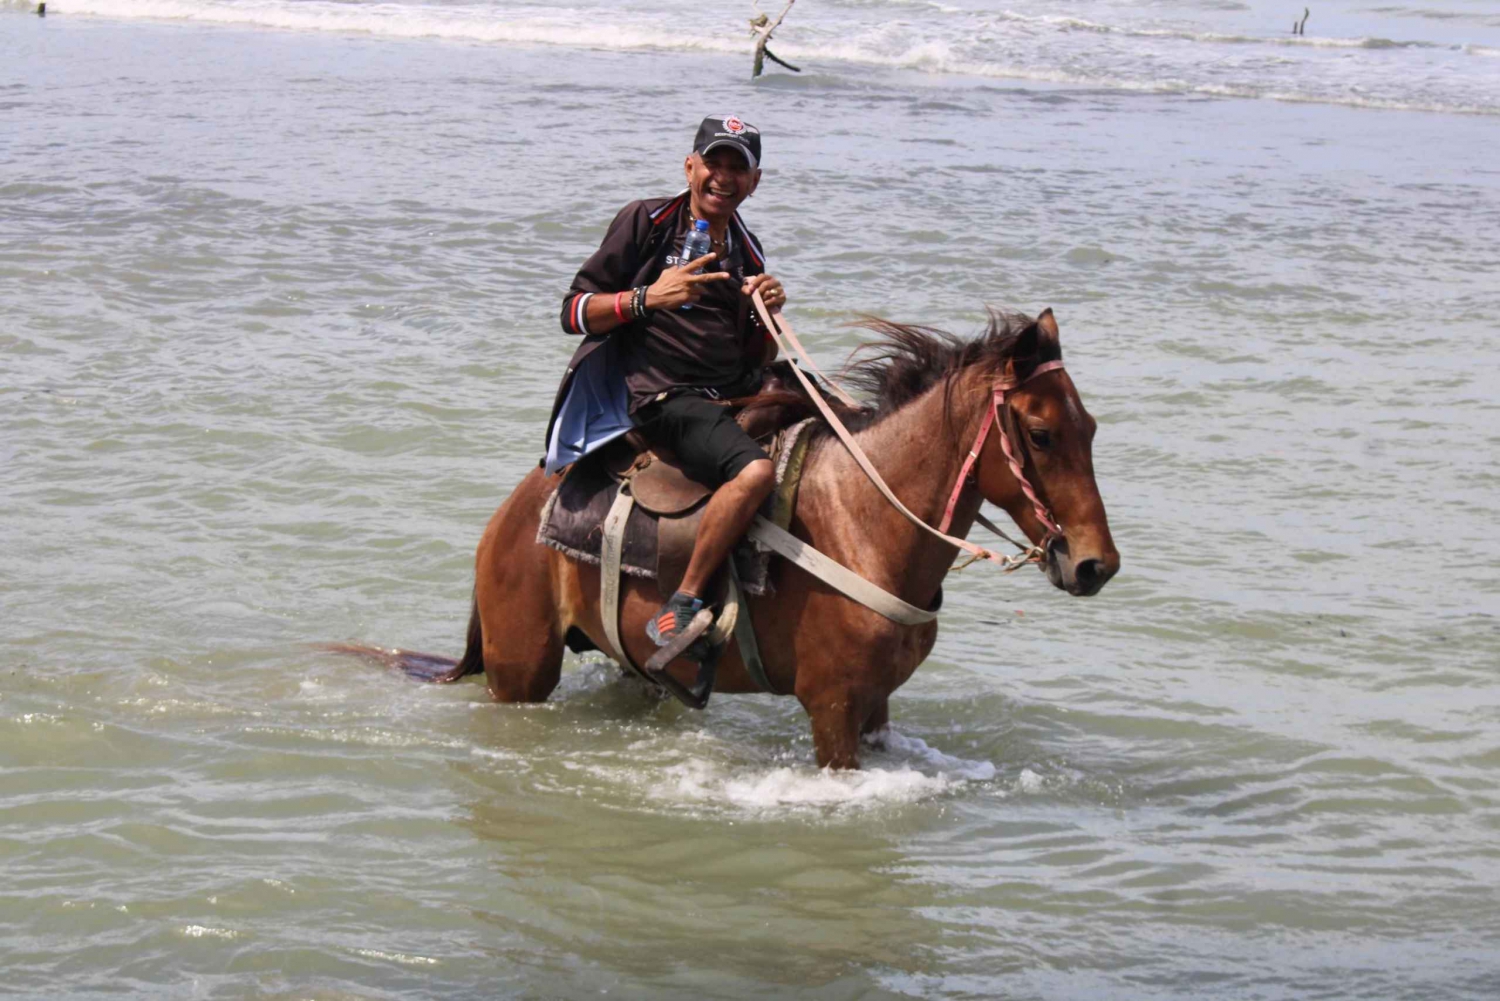 Paseos a caballo por la playa y el campo